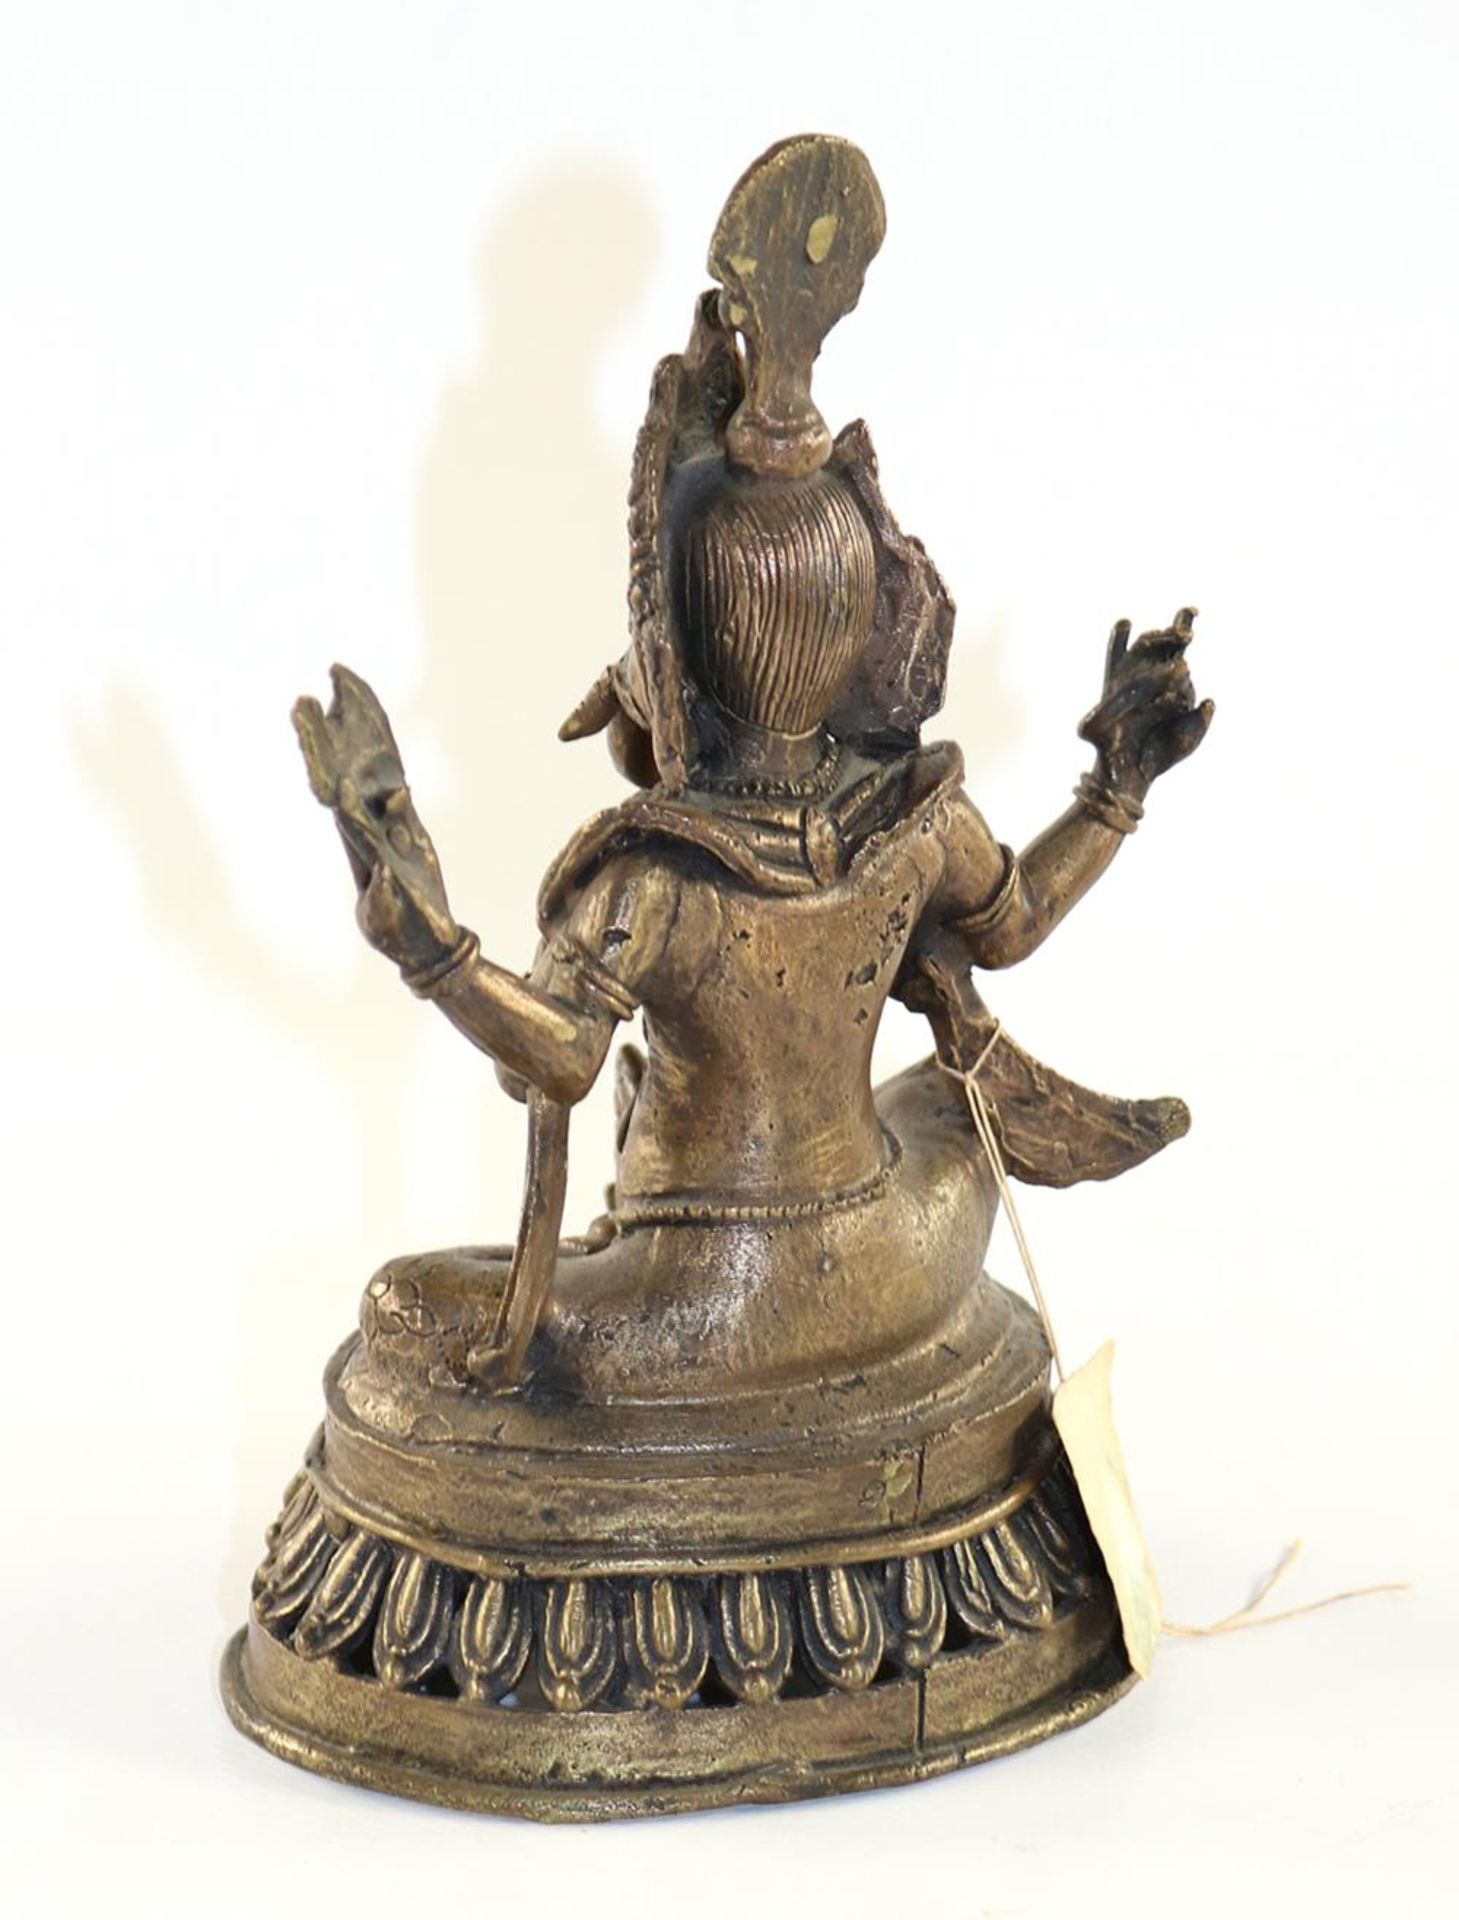 Ganesha BronzeGanesha Bronze Wohl Indien 20.Jhdt. Auf Lotusthron sitzend. Die Ratte zuGanes - Bild 2 aus 2